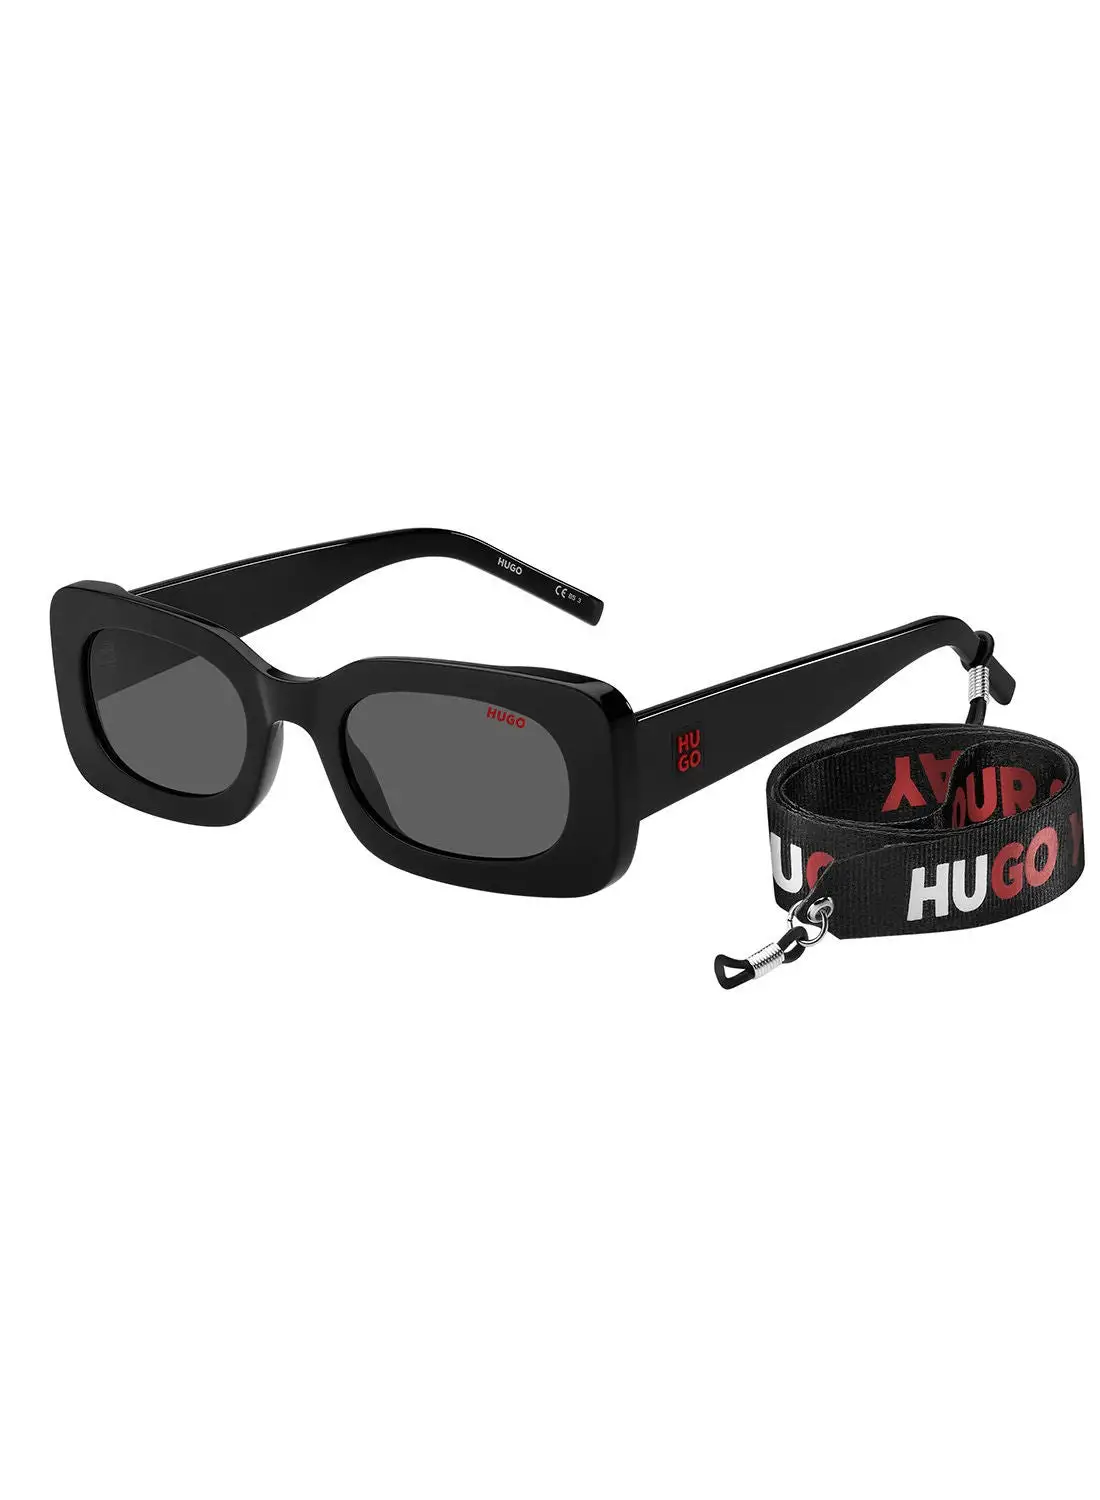 HUGO Women's UV Protection Oval Sunglasses - Hg 1220/S Black 52 - Lens Size: 52 Mm